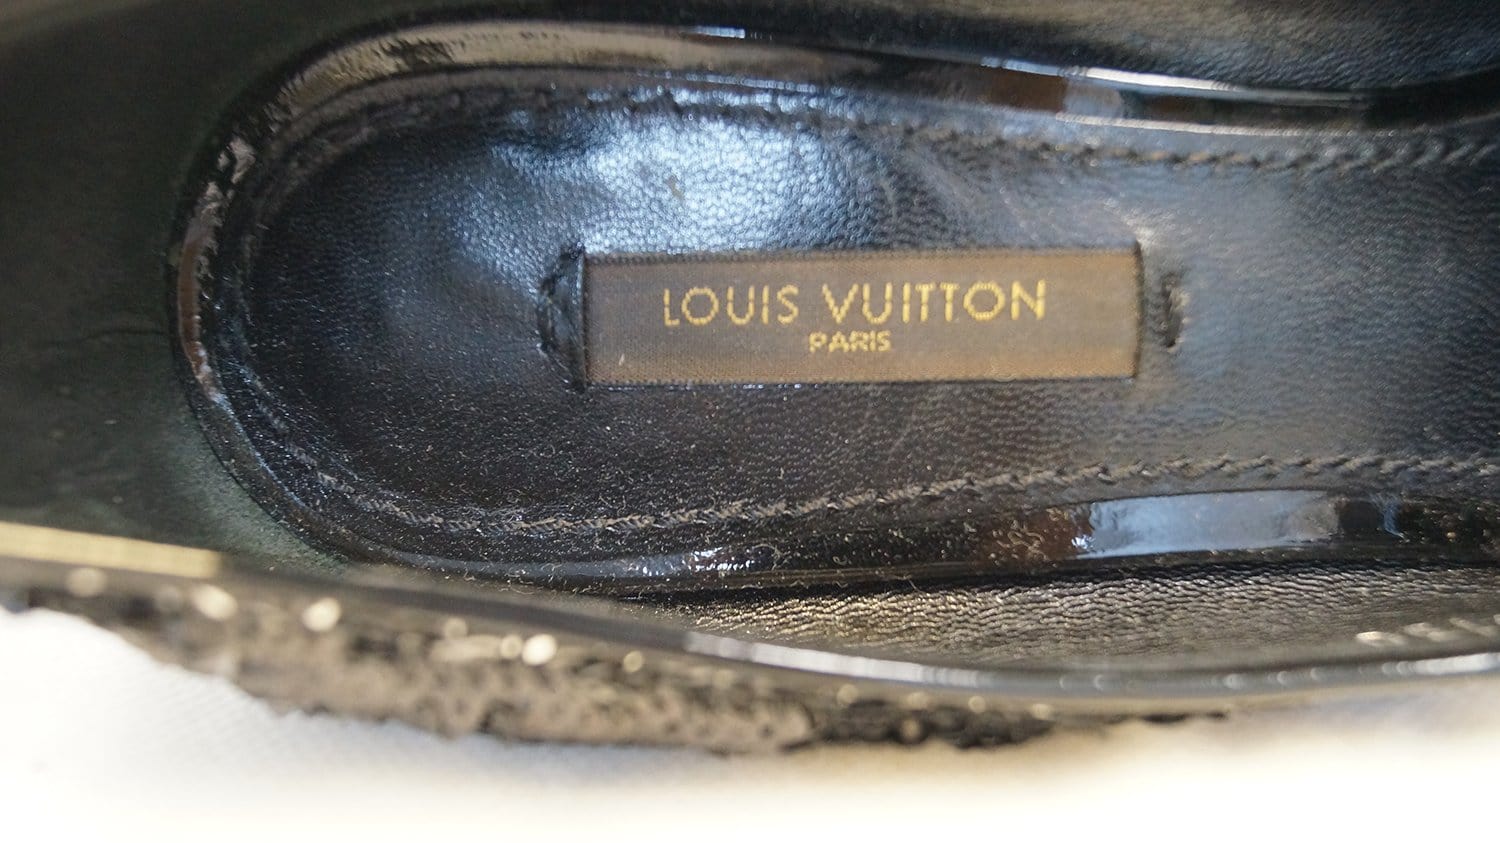 LOUIS VUITTON Liza Sequin Black & Silver Pointy Toe Pumps Noir SZ 37